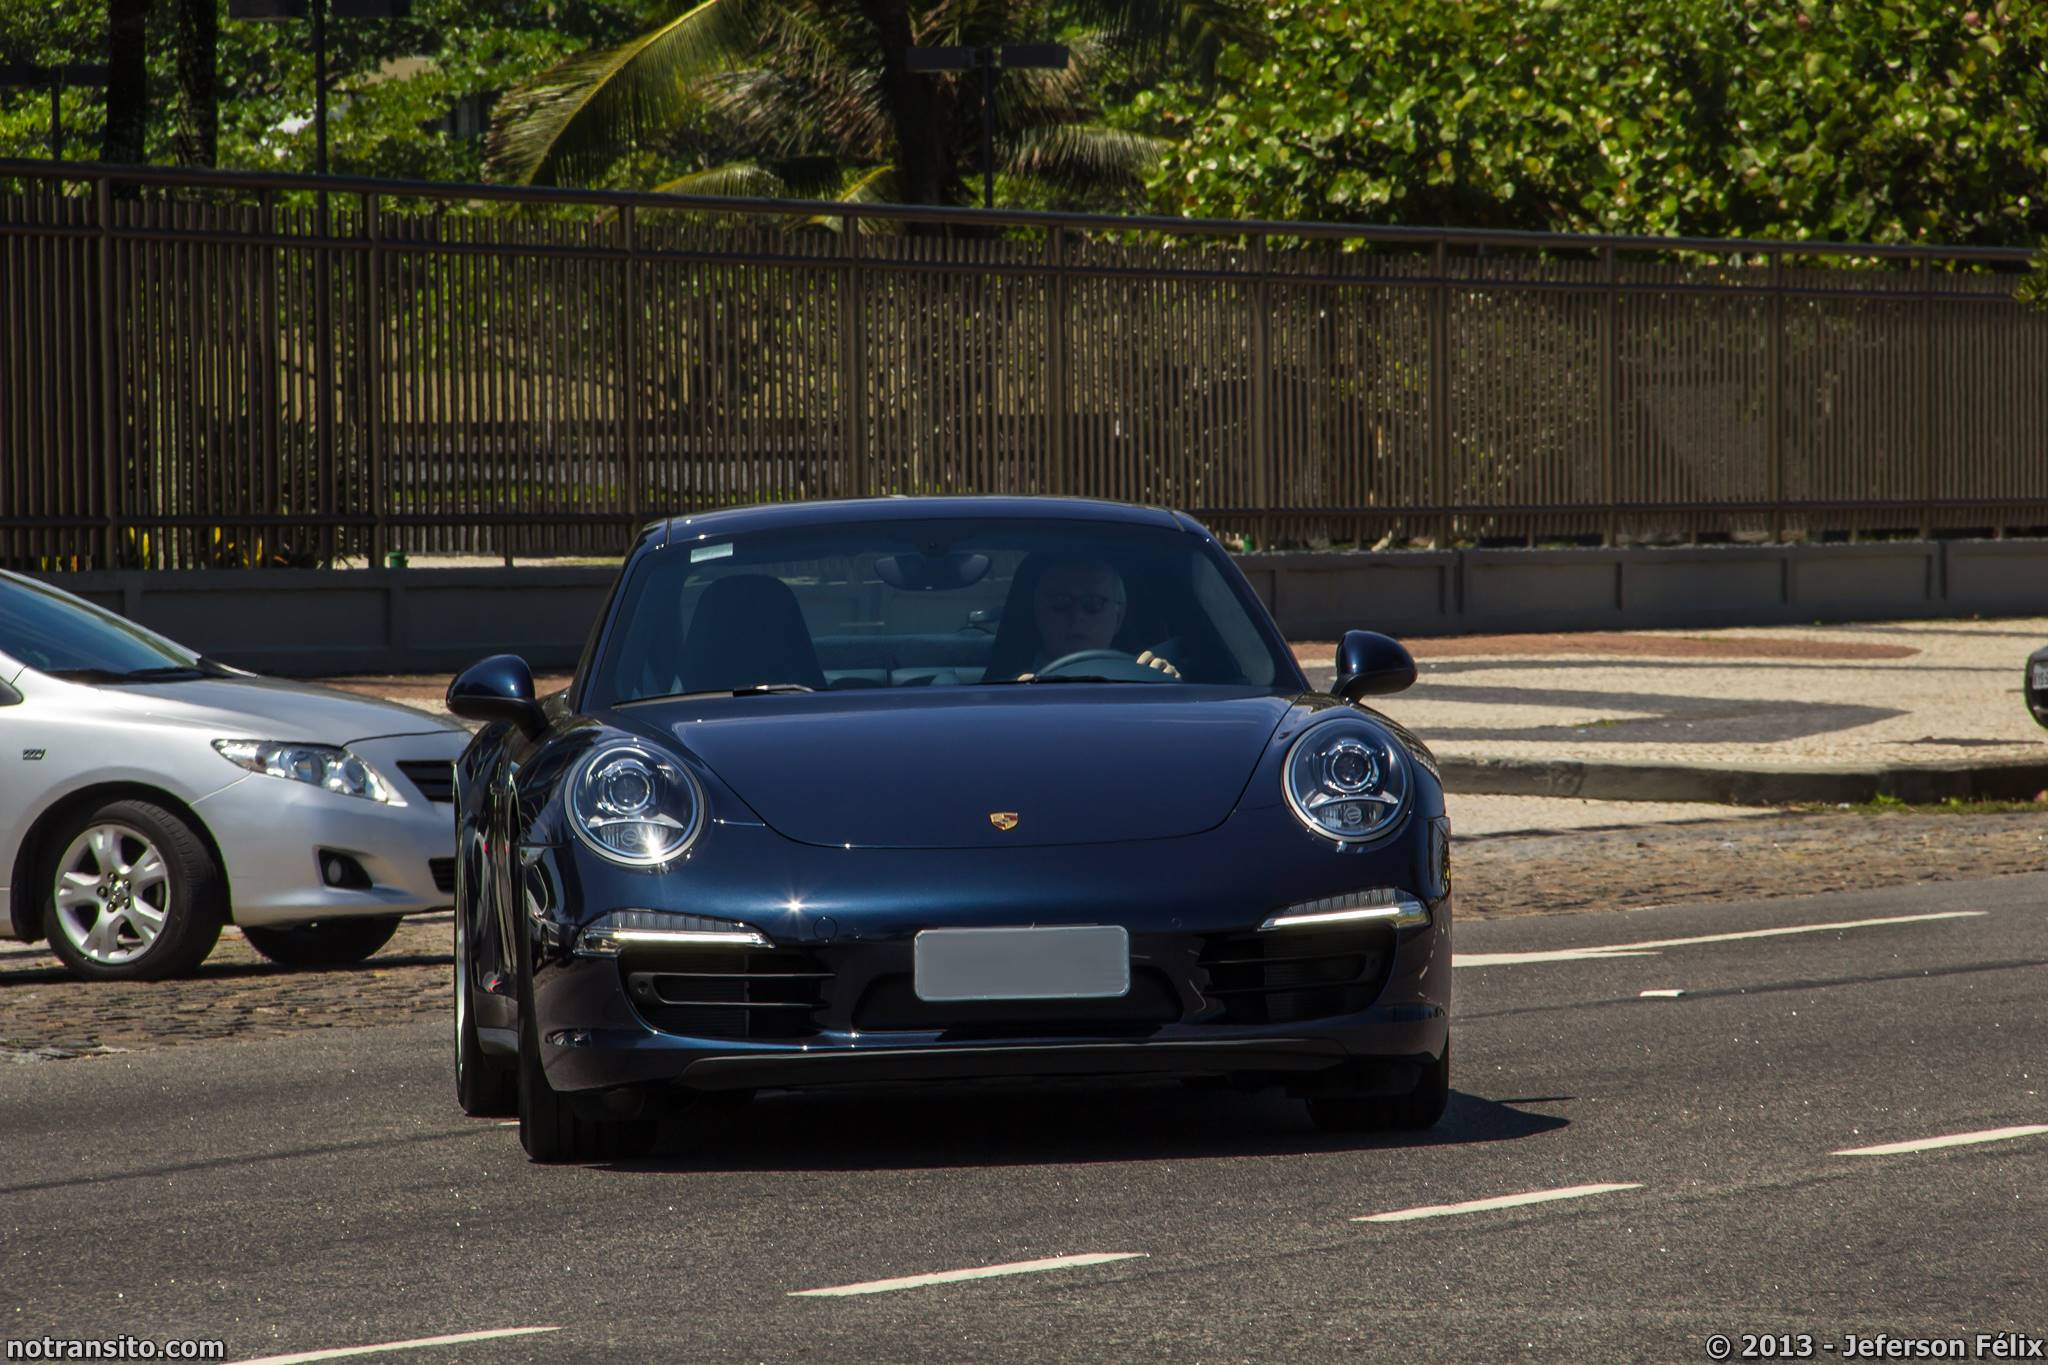 Porsche 911 Carrera 4S, Supercarros no Rio de Janeiro, Carros Exóticos no Rio de Janeiro